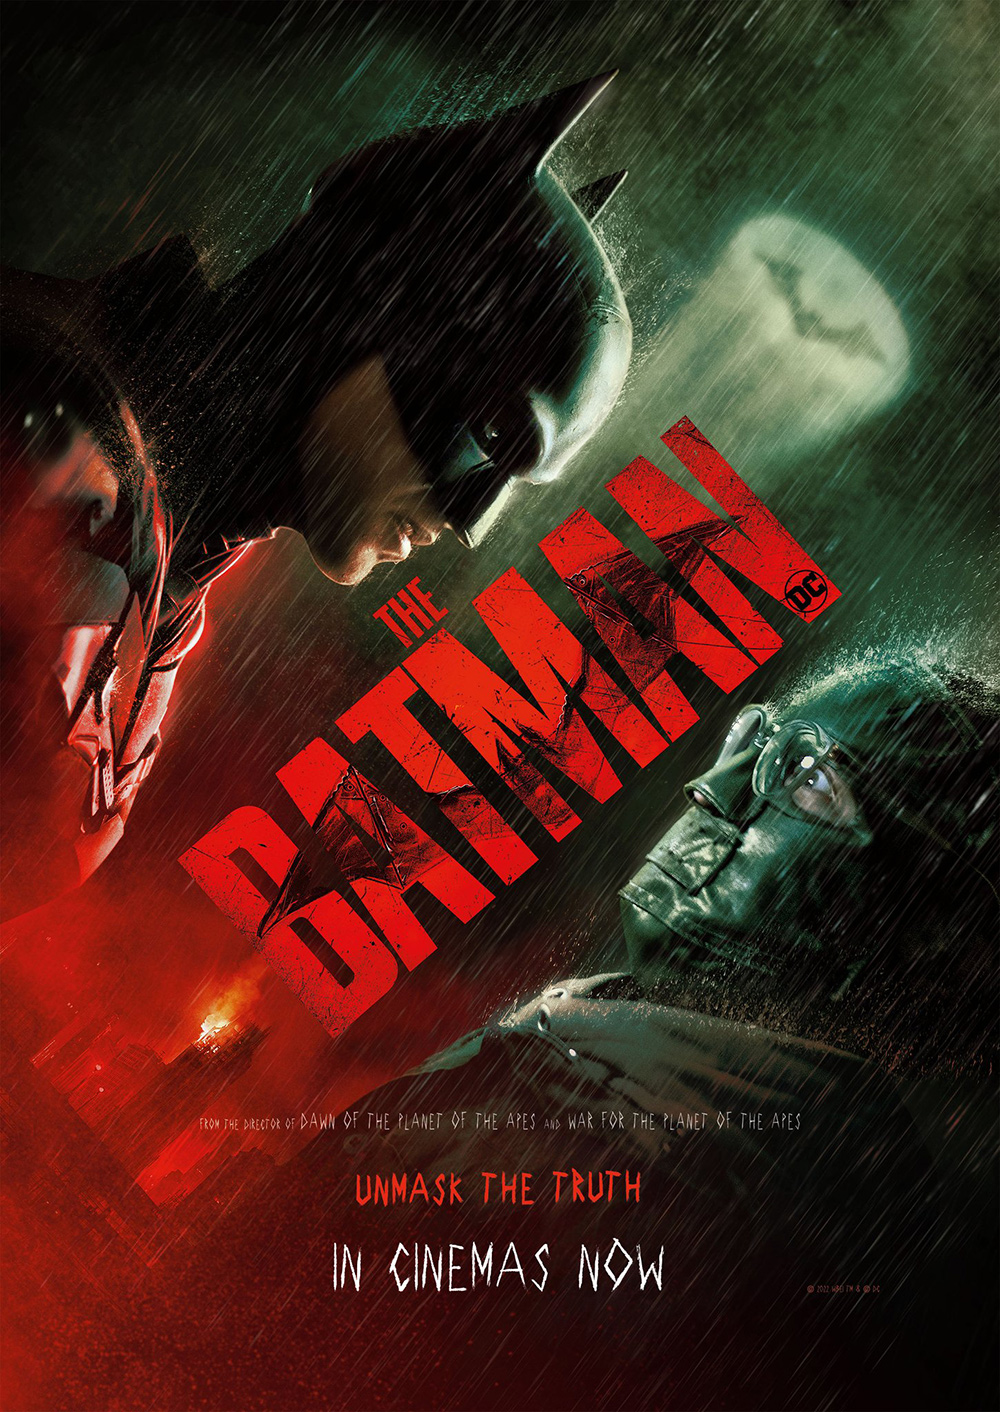 电影《新蝙蝠侠》正式版海报!